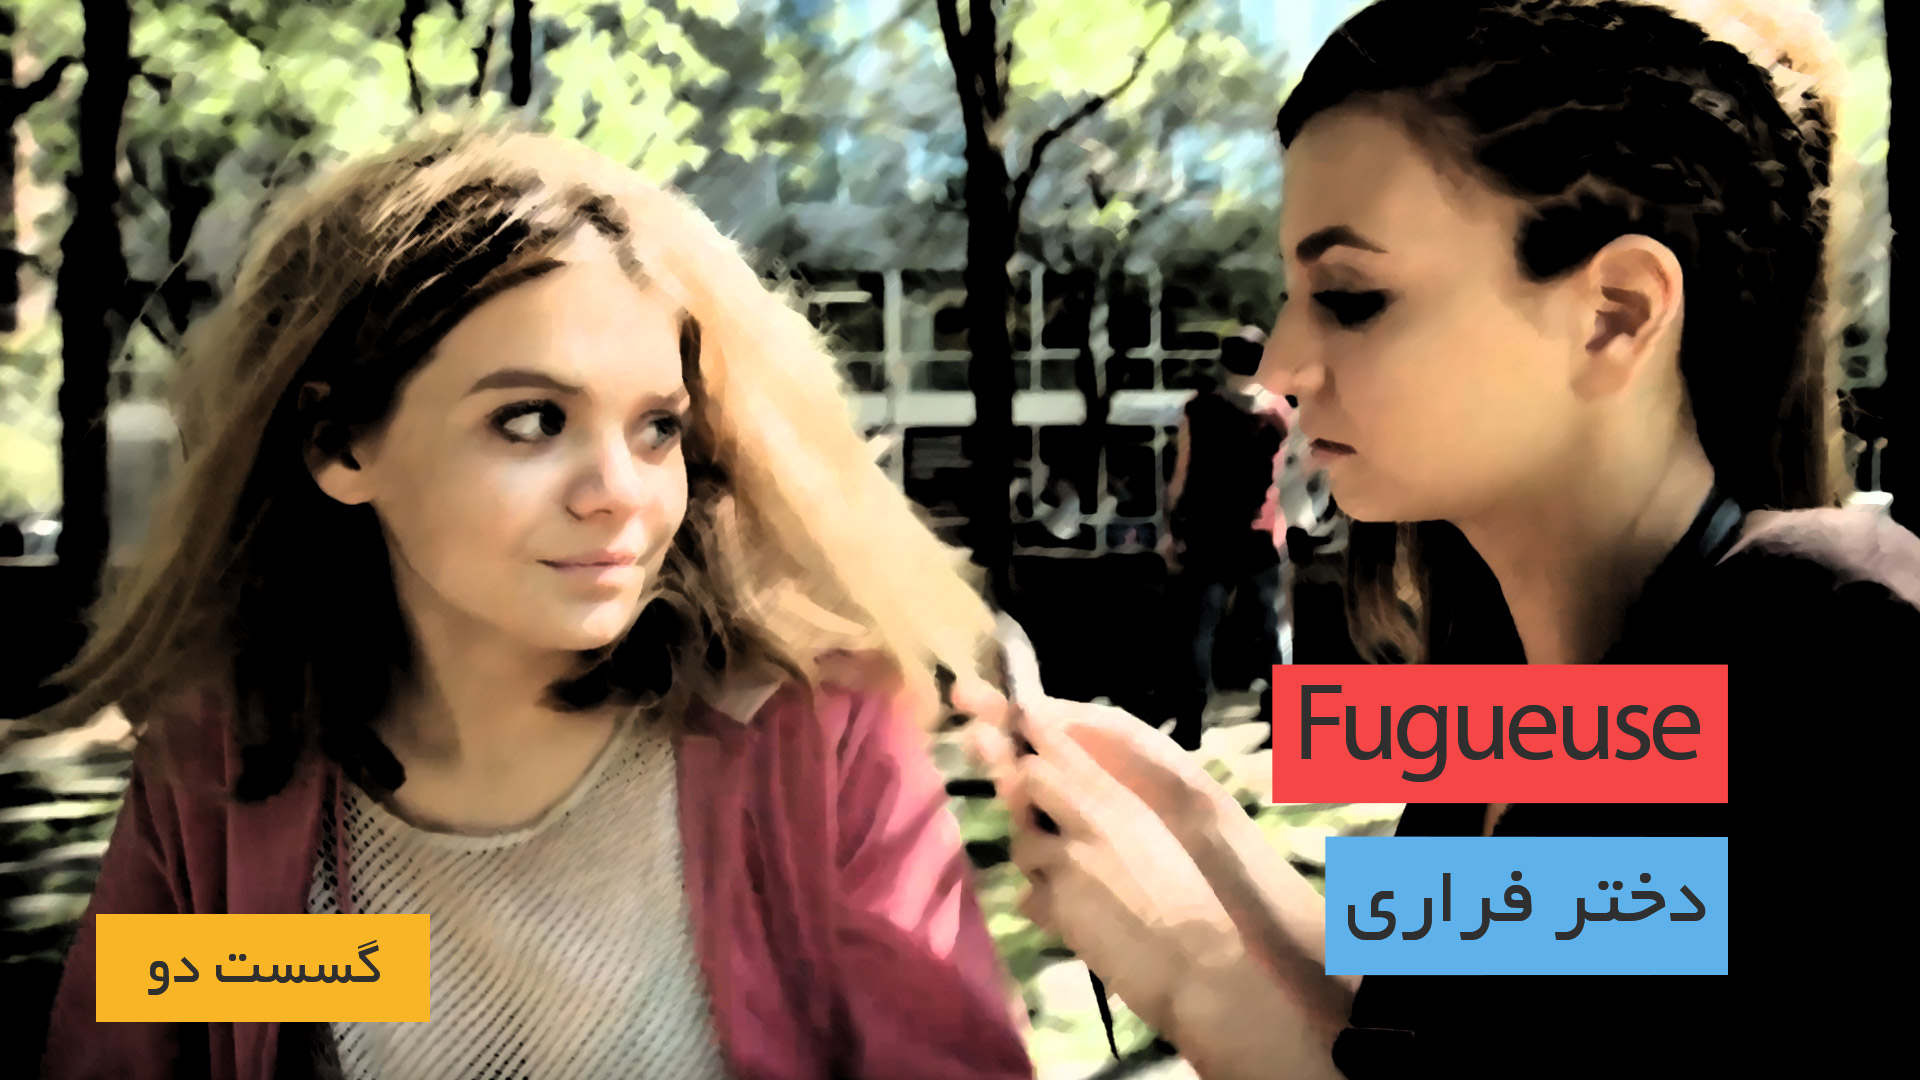 دانلود سریال فرانسوی Fugueuse - Saison 2 (دختر فراری) در گونه درام به همراه زیرنویس فرانسوی سریال برونداد سال 2020 از تارنمای سلام زبان فرانسه